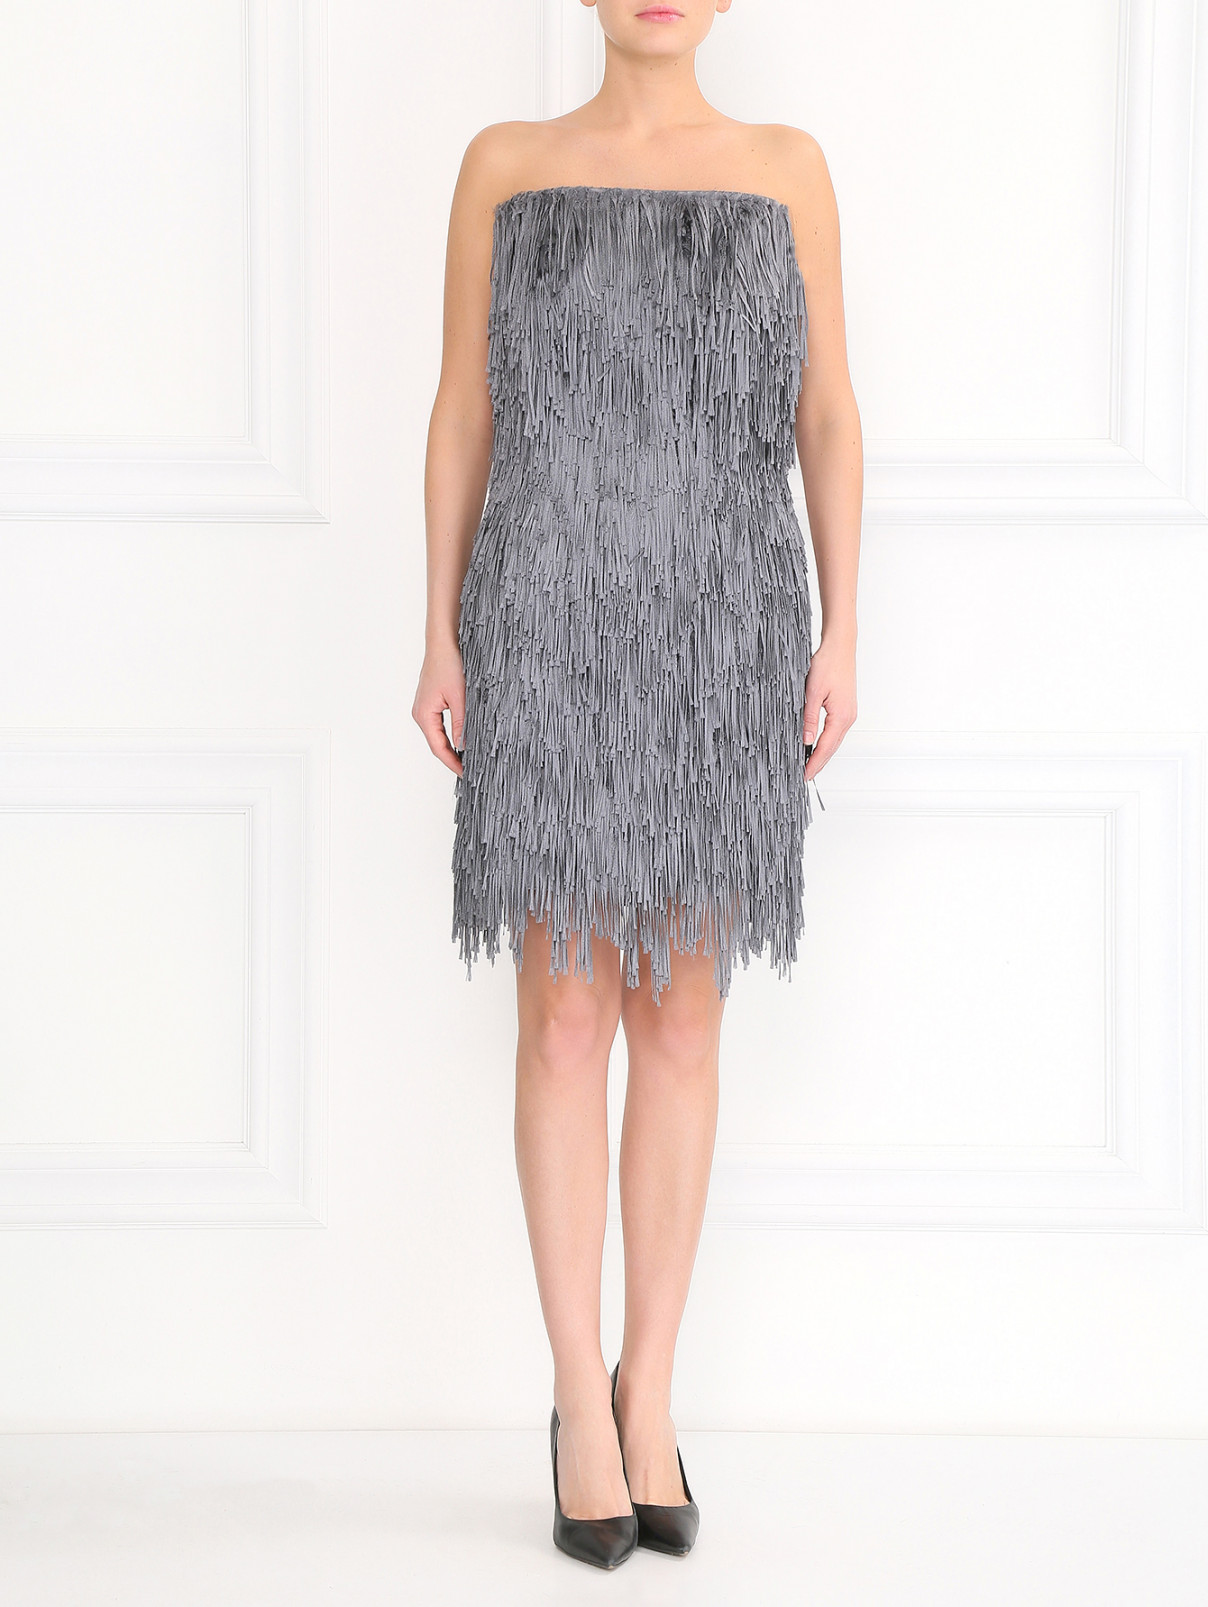 Платье-мини из шелковой бахромы Alberta Ferretti  –  Модель Общий вид  – Цвет:  Серый